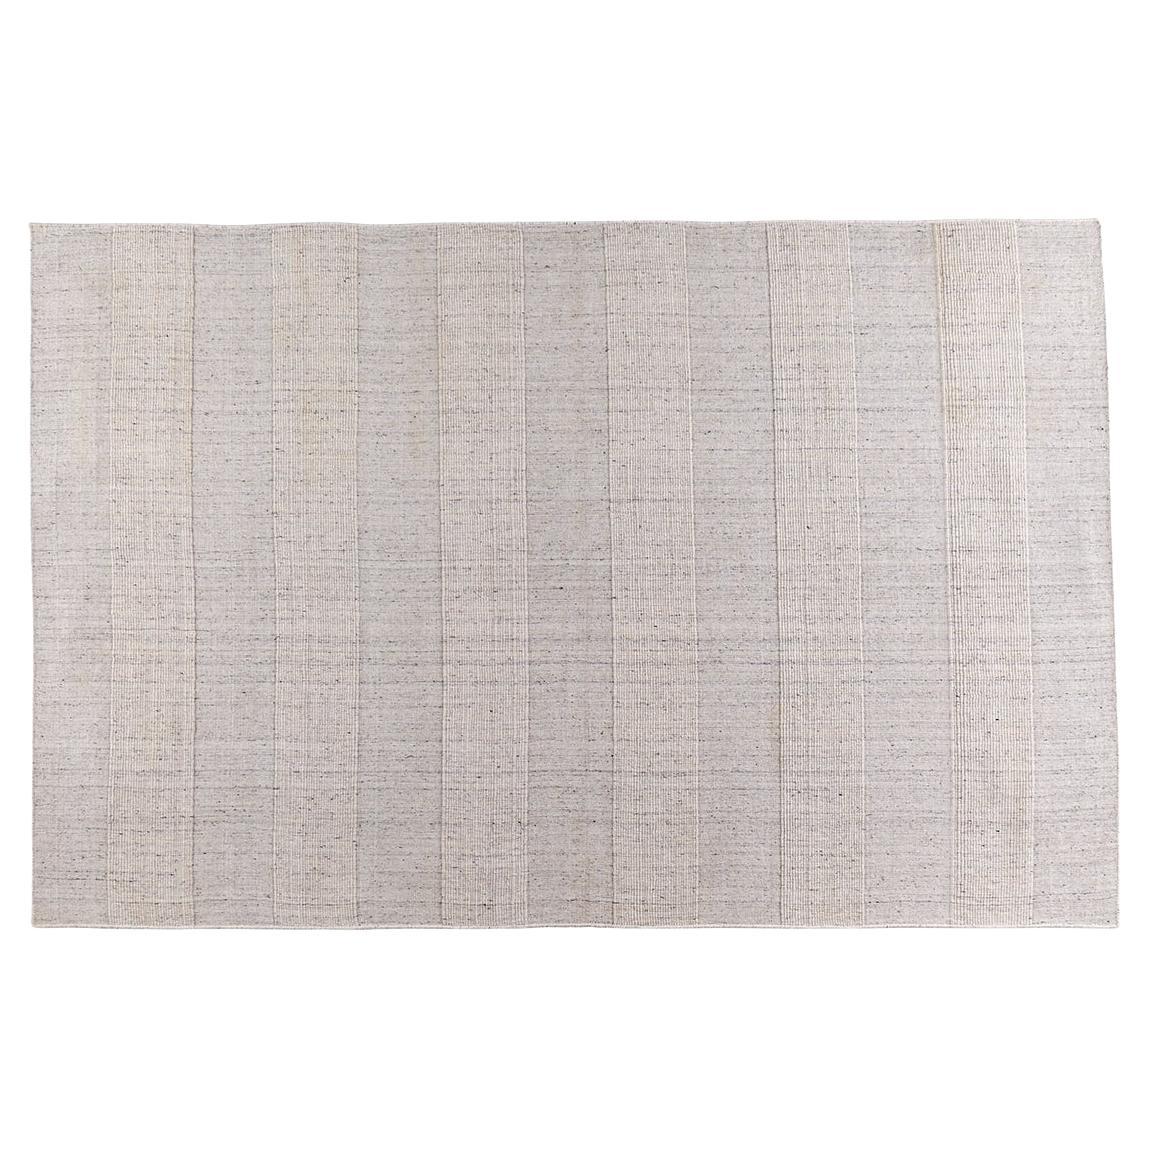 Tapis Mithun tissé à la main en mélange de laine durable et écologique, 170 x 240 cm